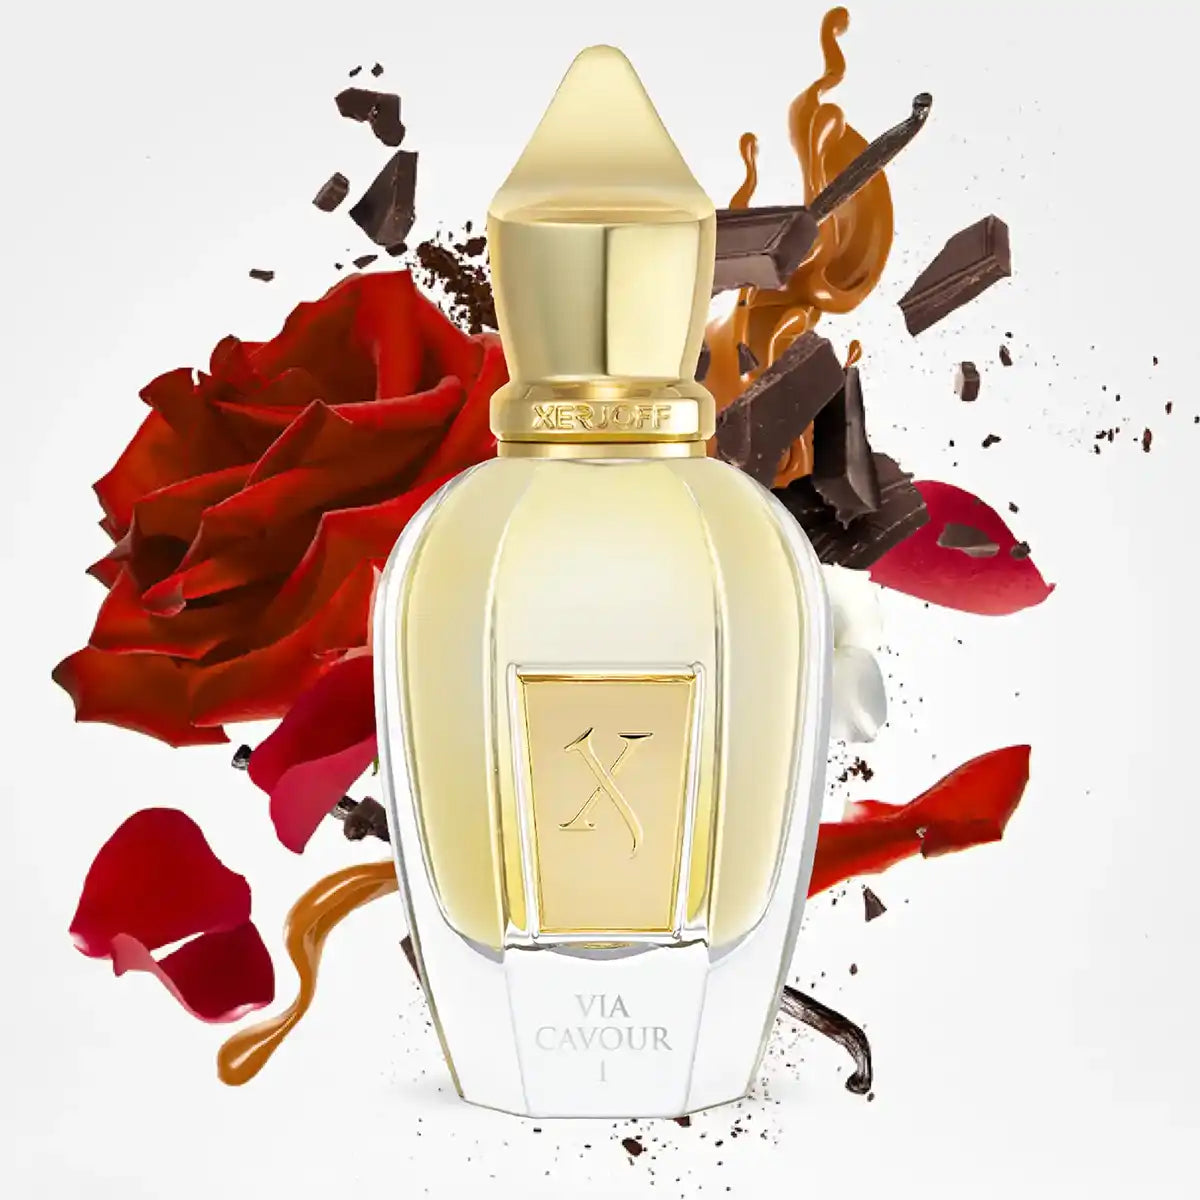 Xerjoff Via Cavour 1 Parfum 50ml